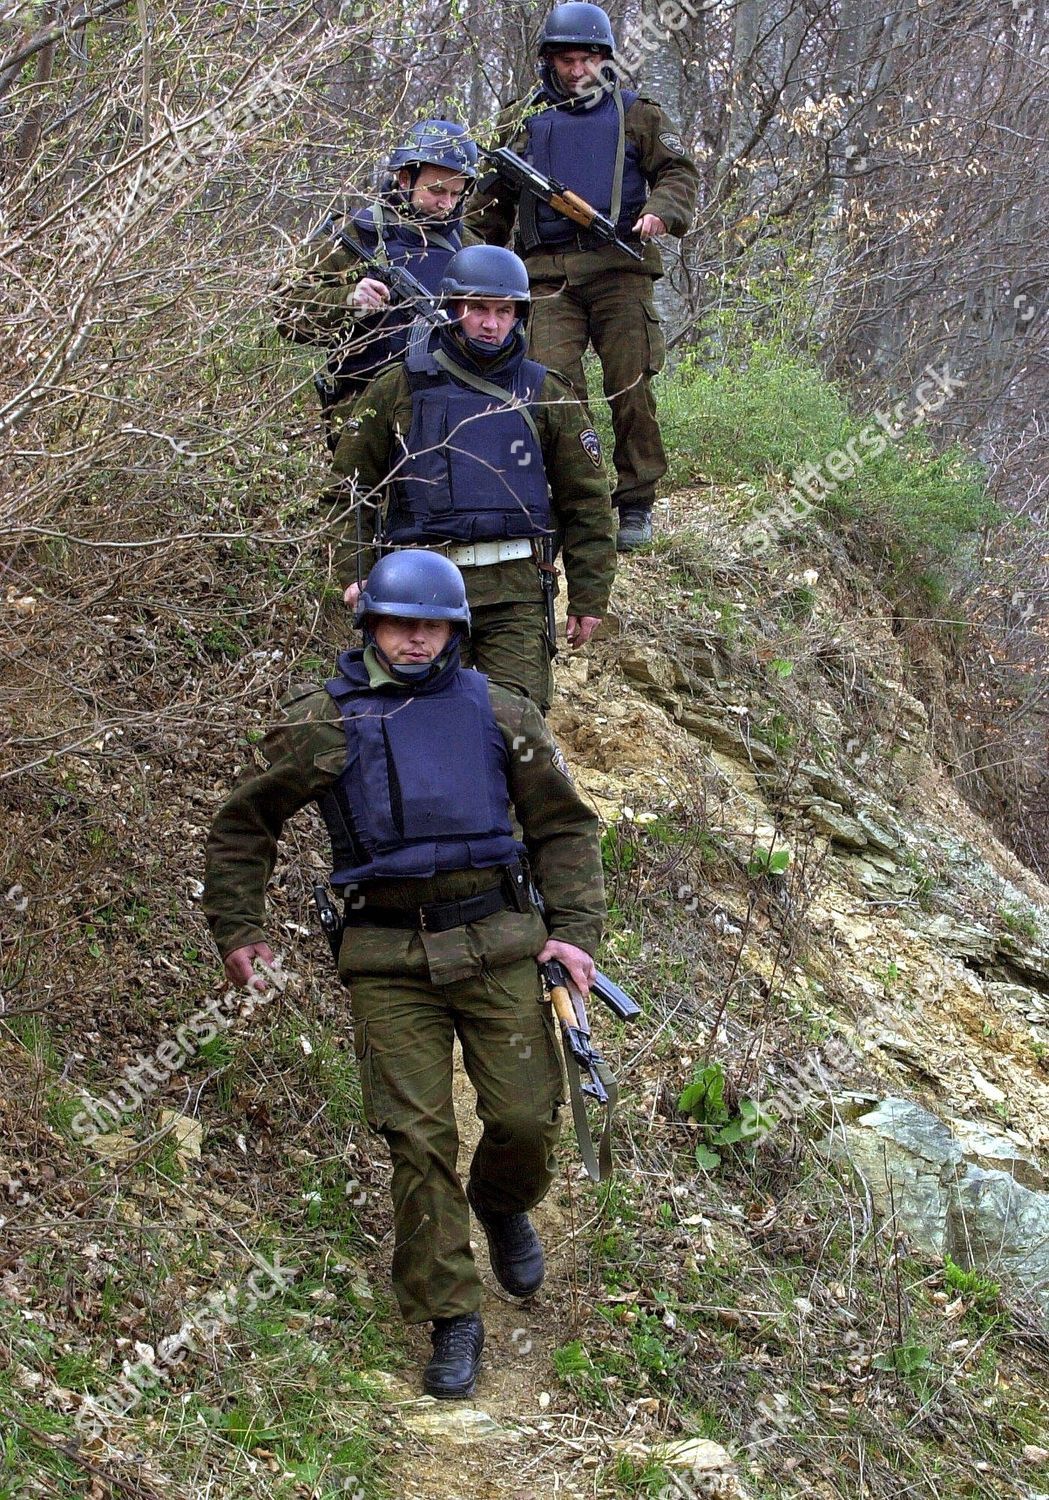 macedonia-spec-police-patrol-mar-2001-shutterstock-editorial-7731517a.jpg